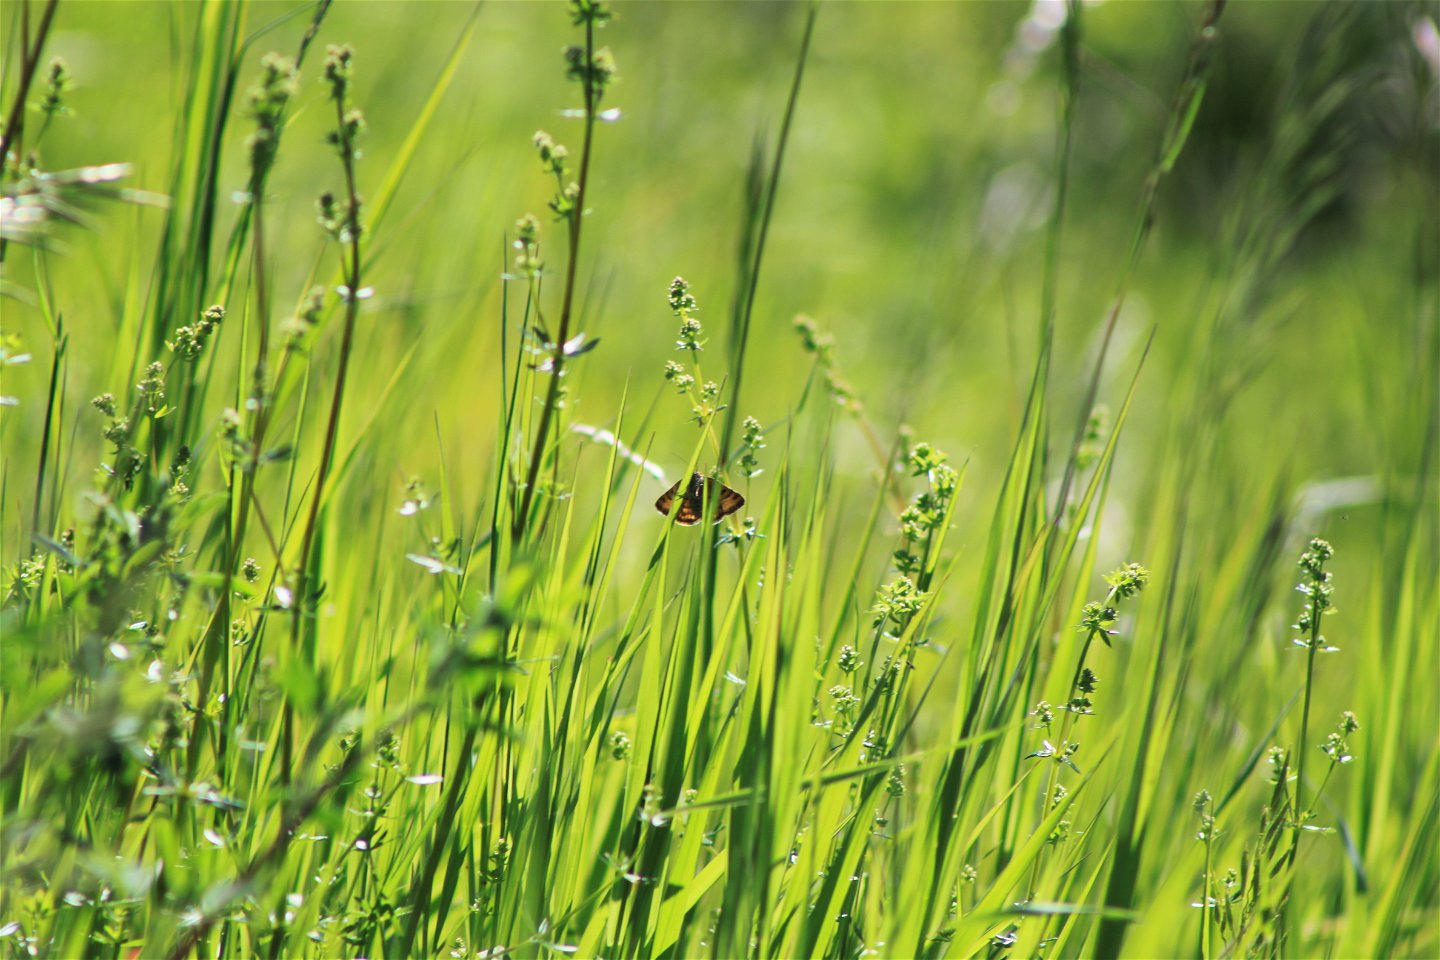 På ett grönt grässtrå sitter en liten fjäril. Det är sommar, soligt väder och frodig grönska på bilden. 